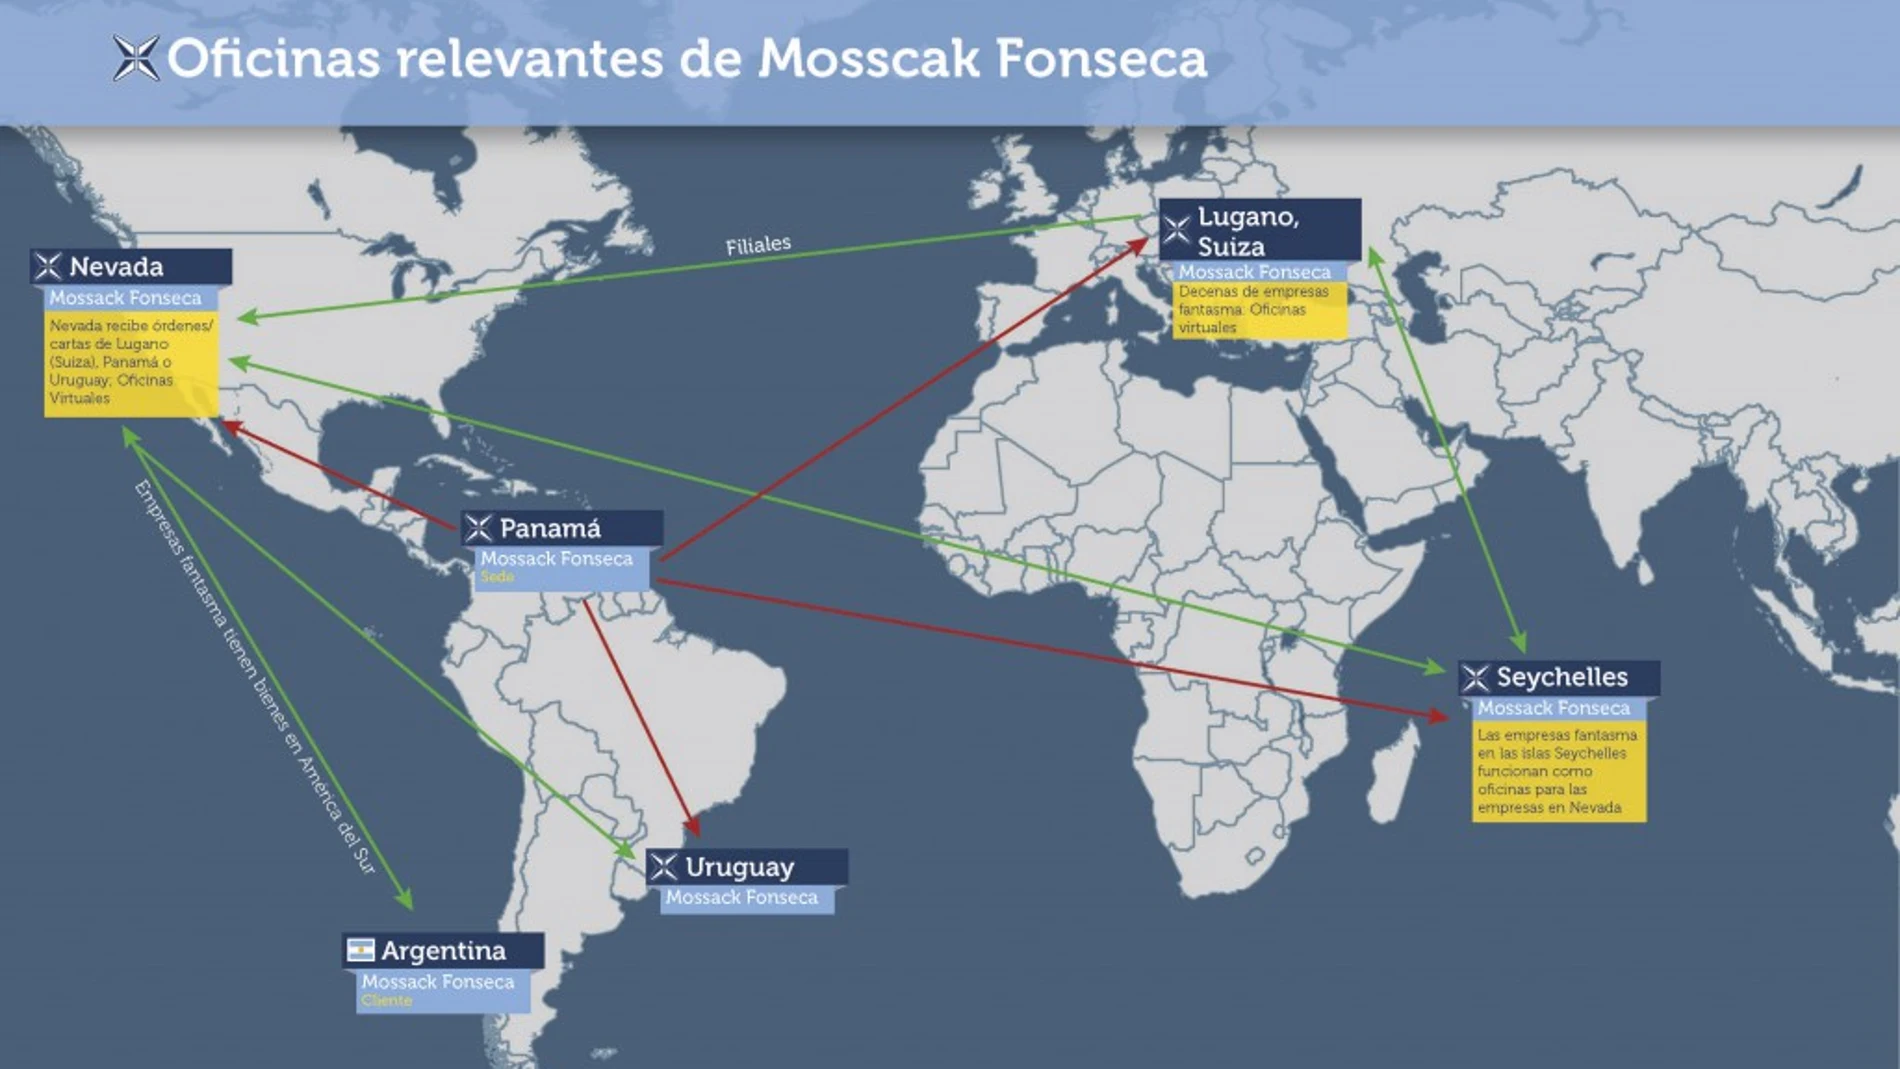 Mossack Fonseca y los 'papeles de Panamá' - Los Papeles de Panamá